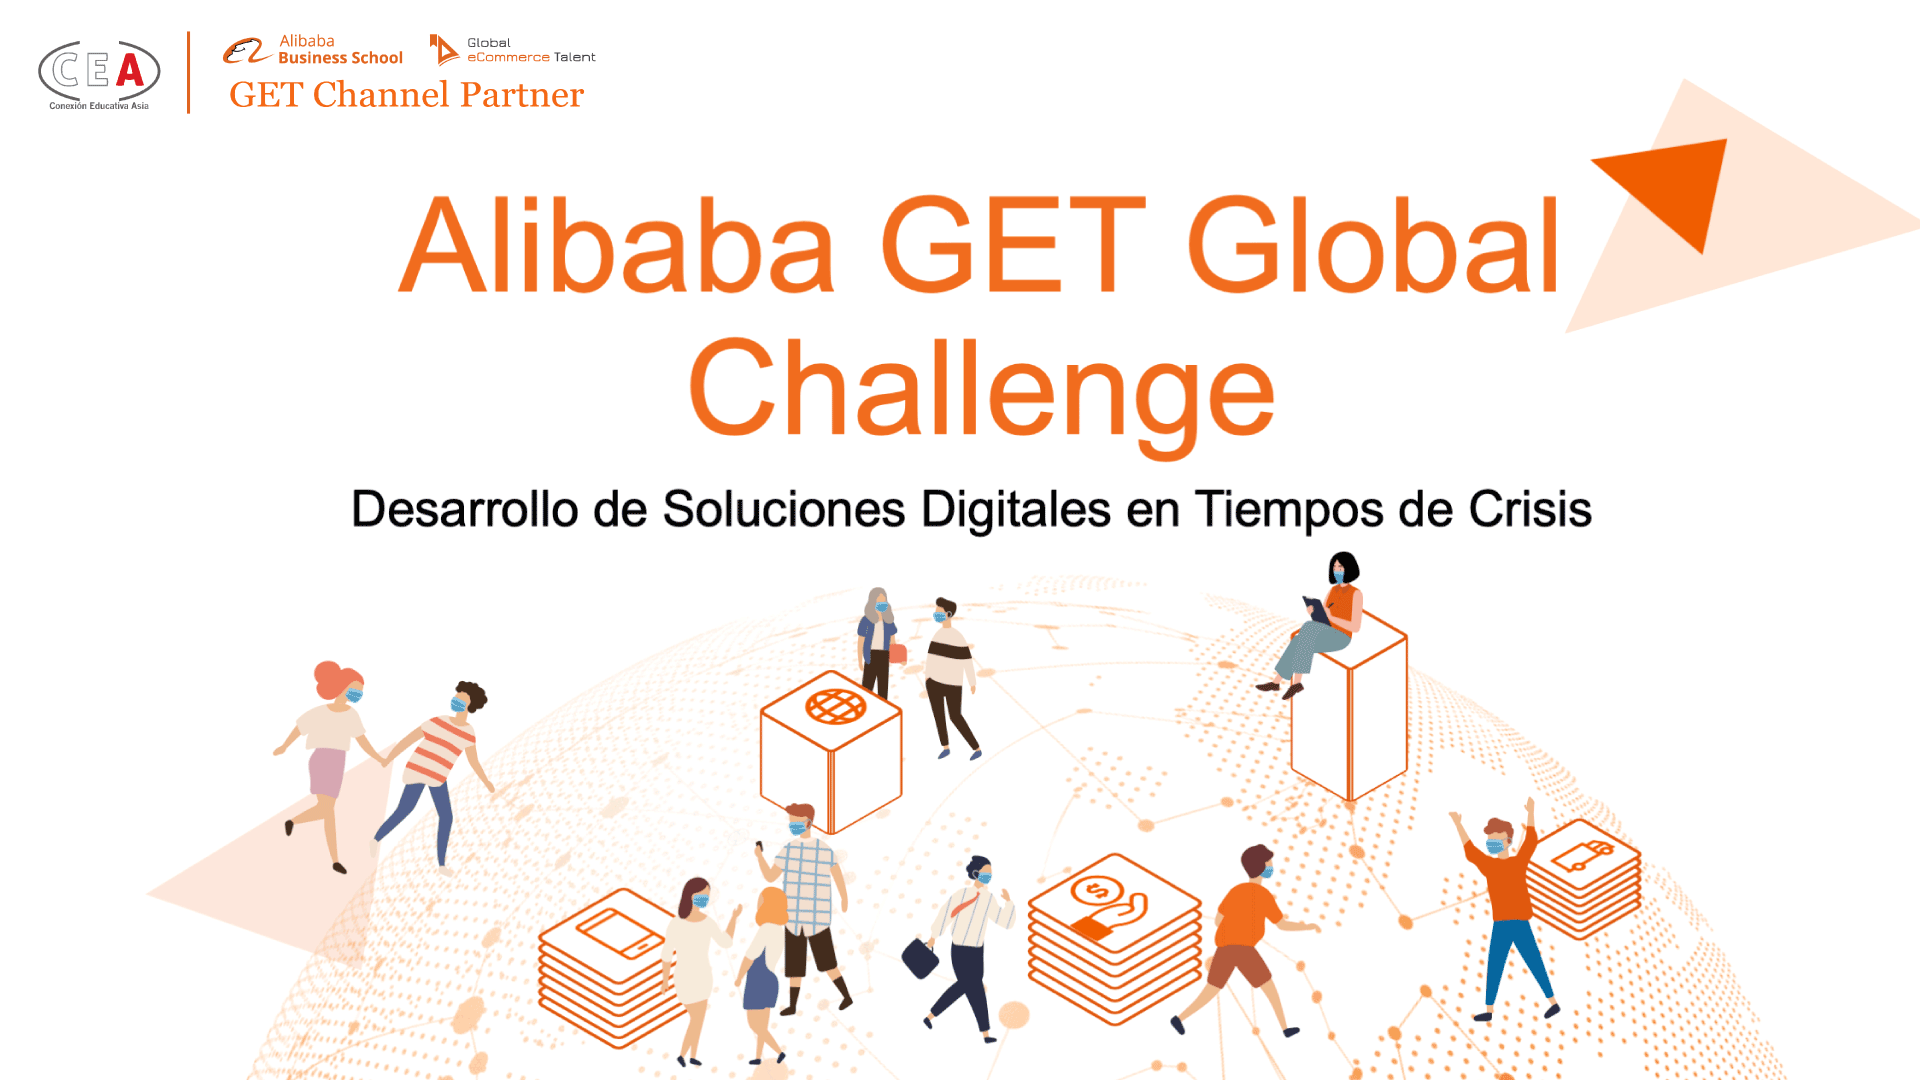 Alibaba GET Global Challenge 2020